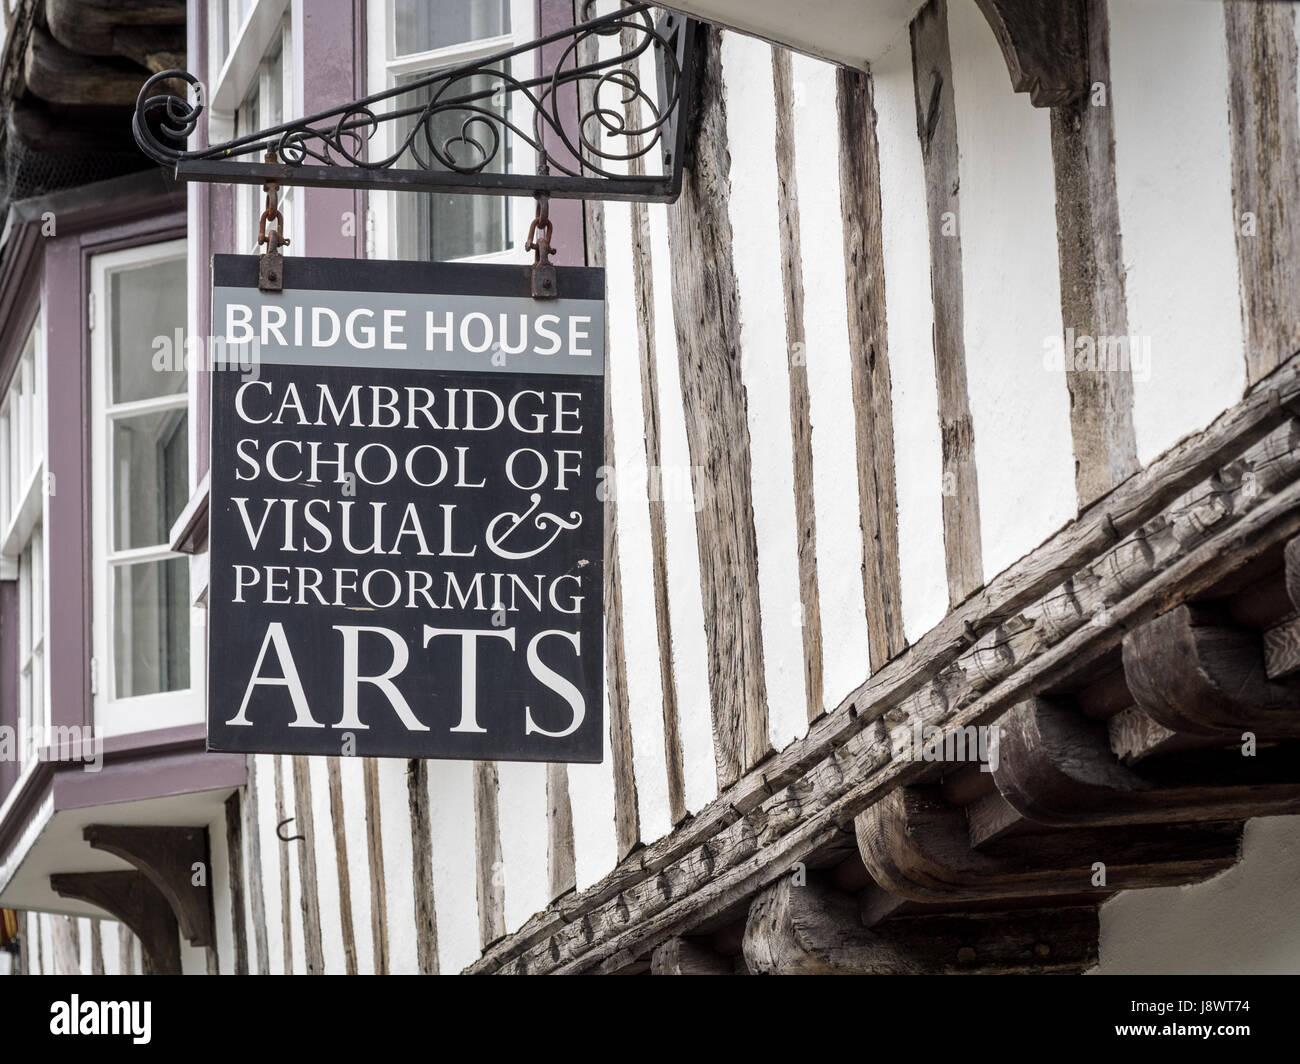 Cambridge School of Visual & Performing Arts - CSVPA